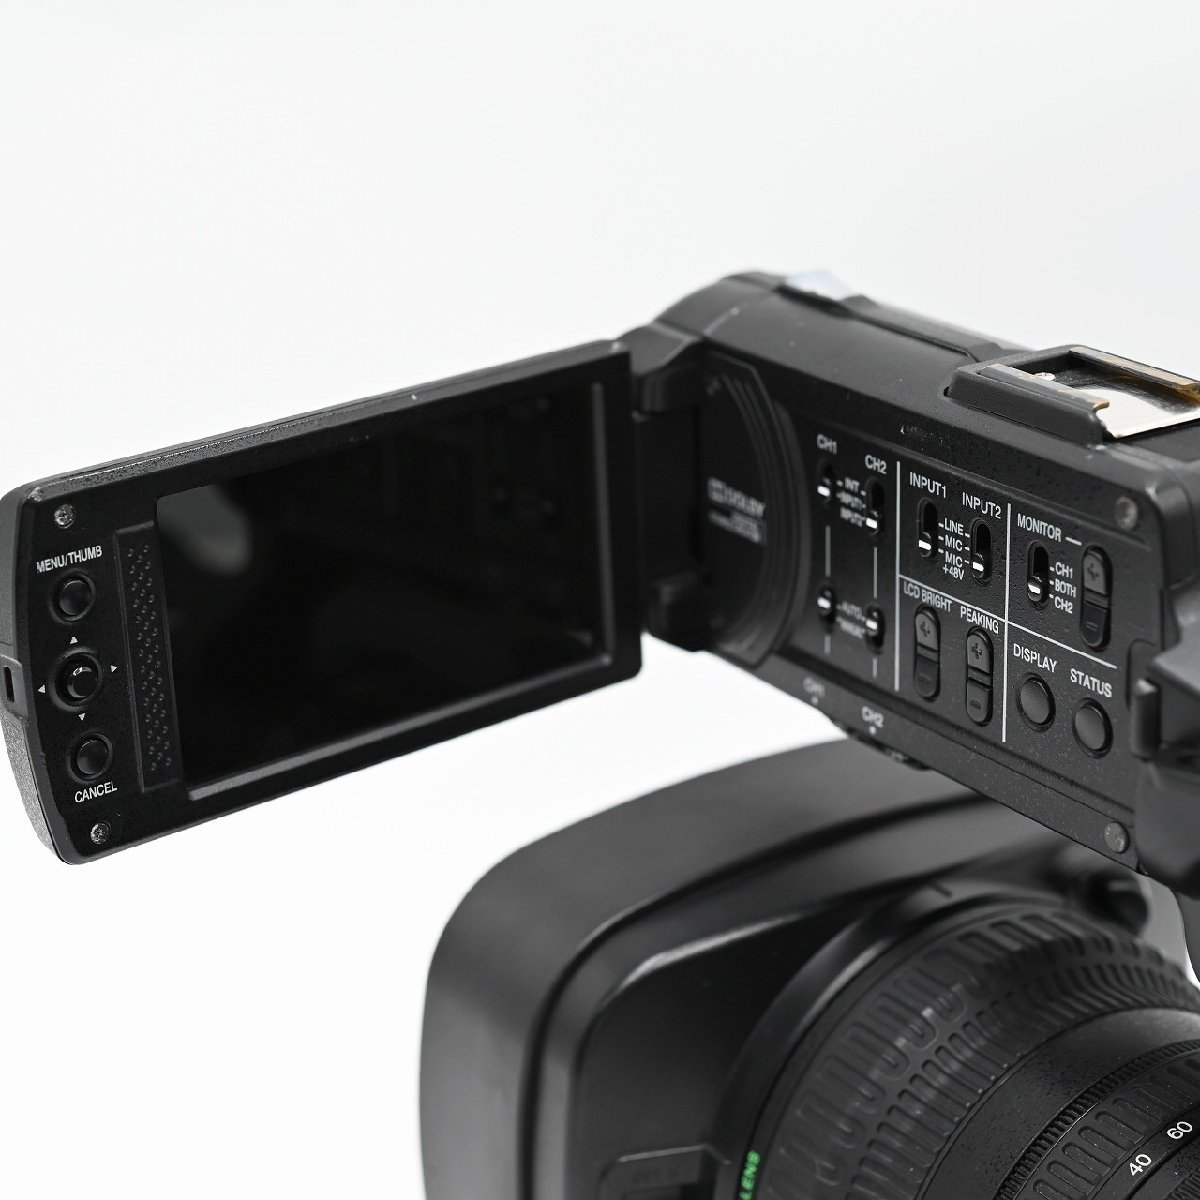 【通電時間 70H】 JVC GY-HM600 ハイビジョン業務用ビデオカメラ ビデオカメラ